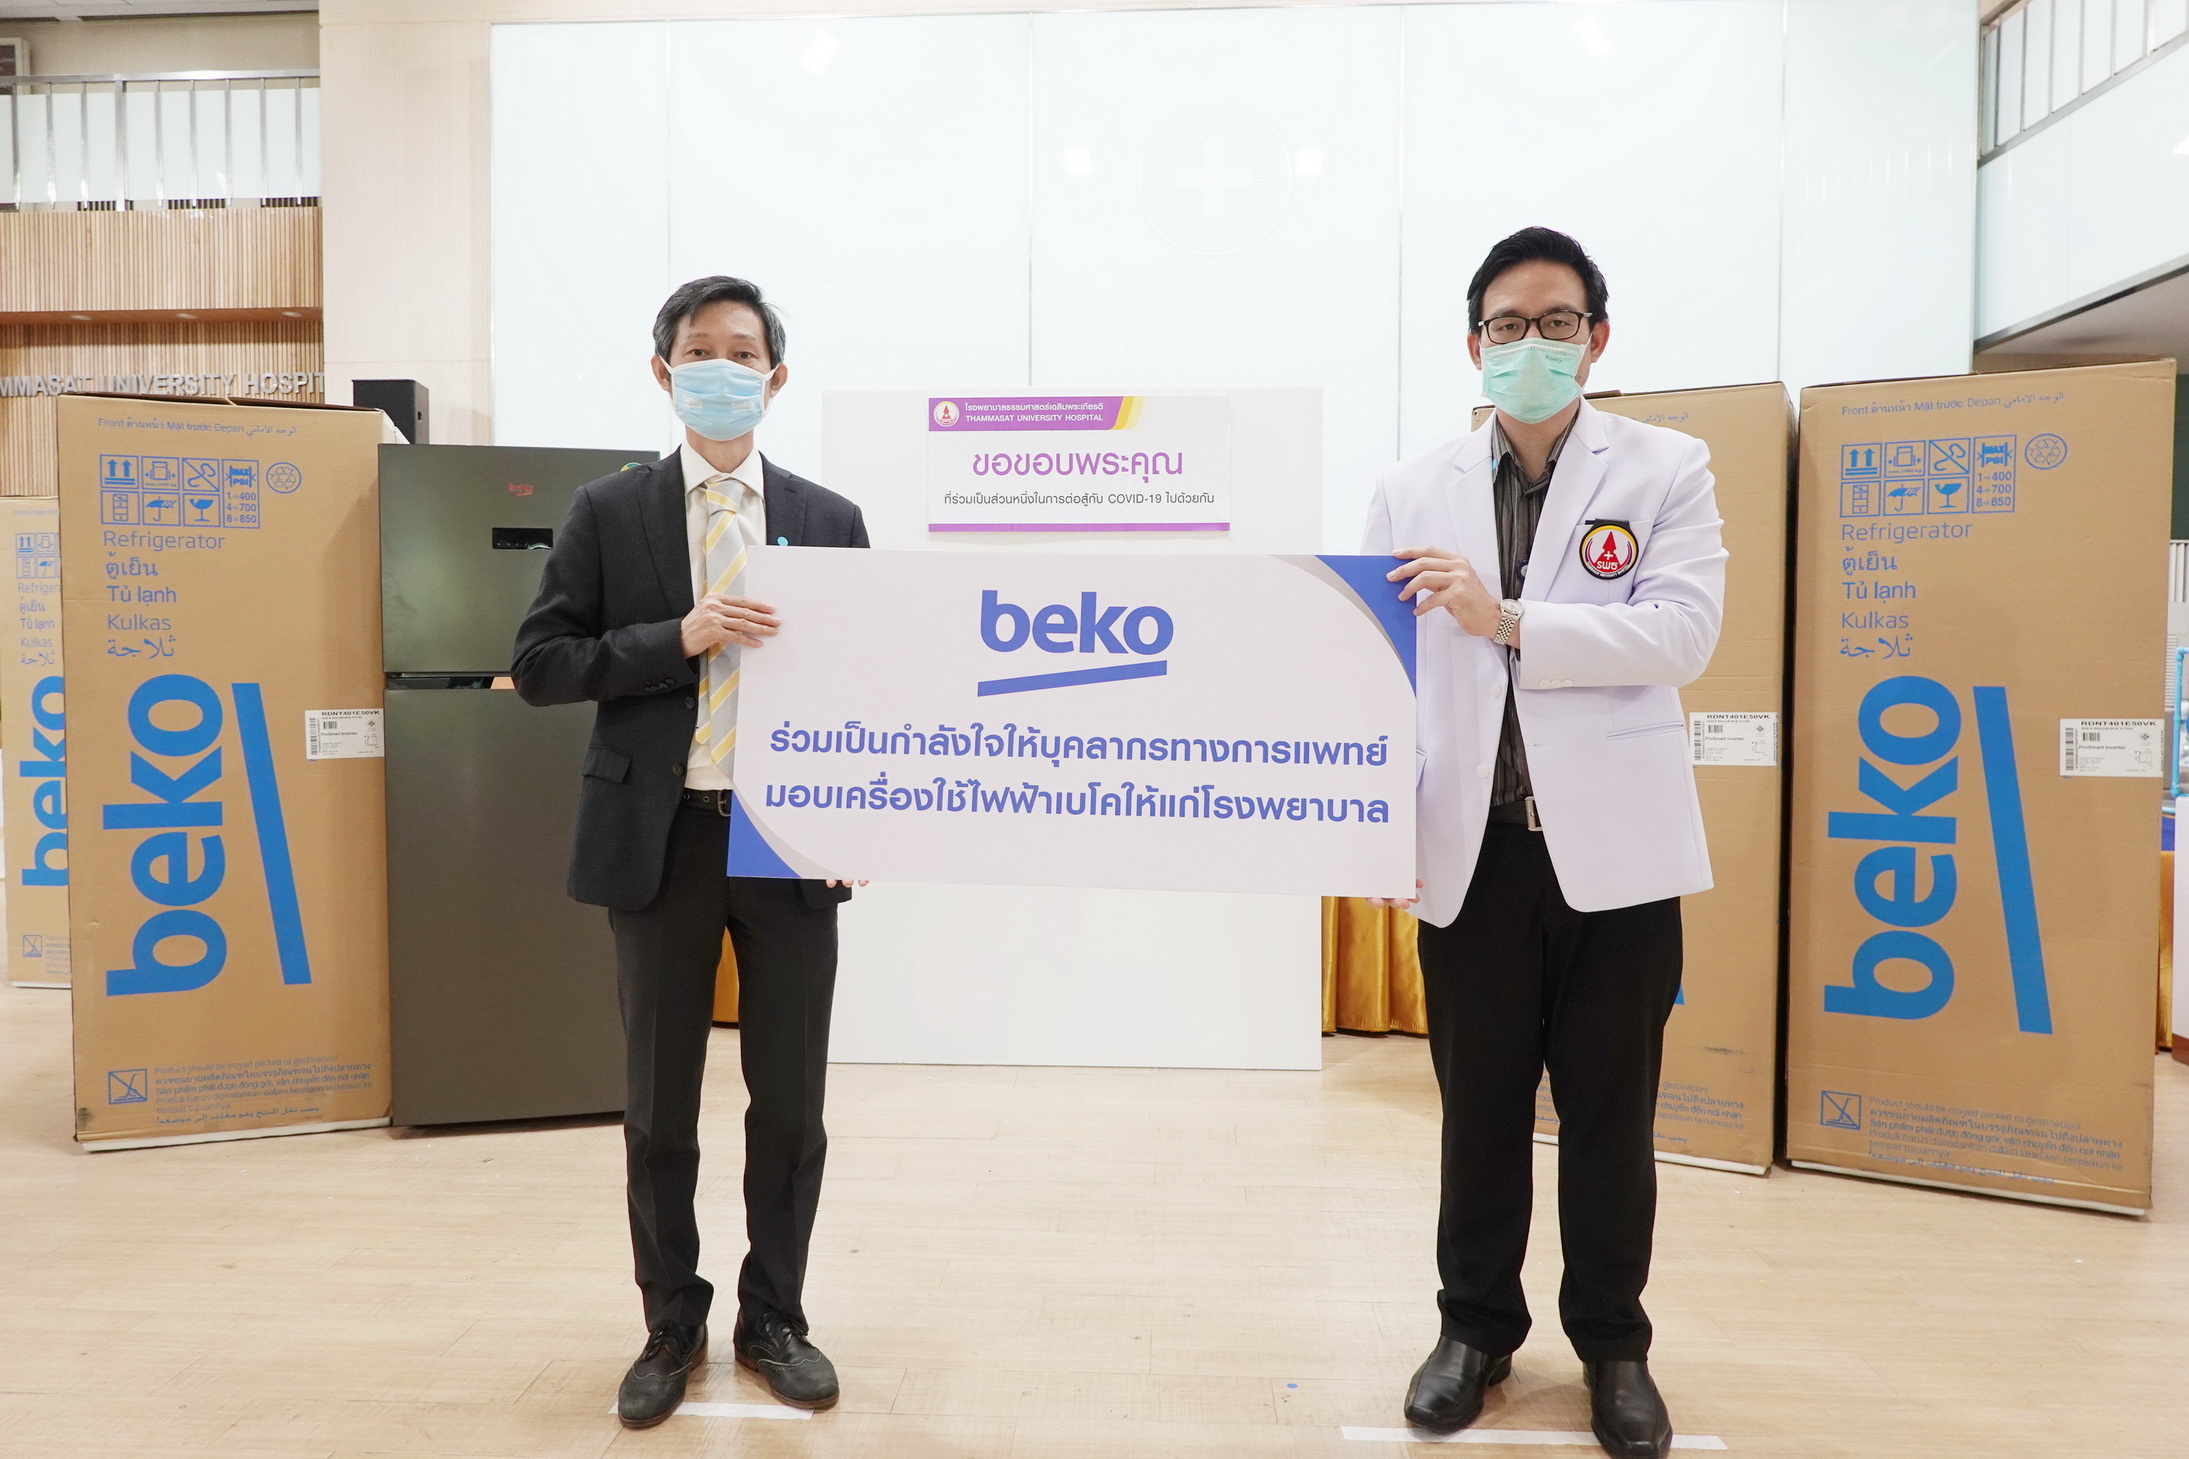 Beko ร่วมเป็นส่วนหนึ่งในการสนับสนุนบุคลากรทางการแพทย์ทั่วประเทศไทย ต่อสู้กับเชื้อไวรัส COVID-19